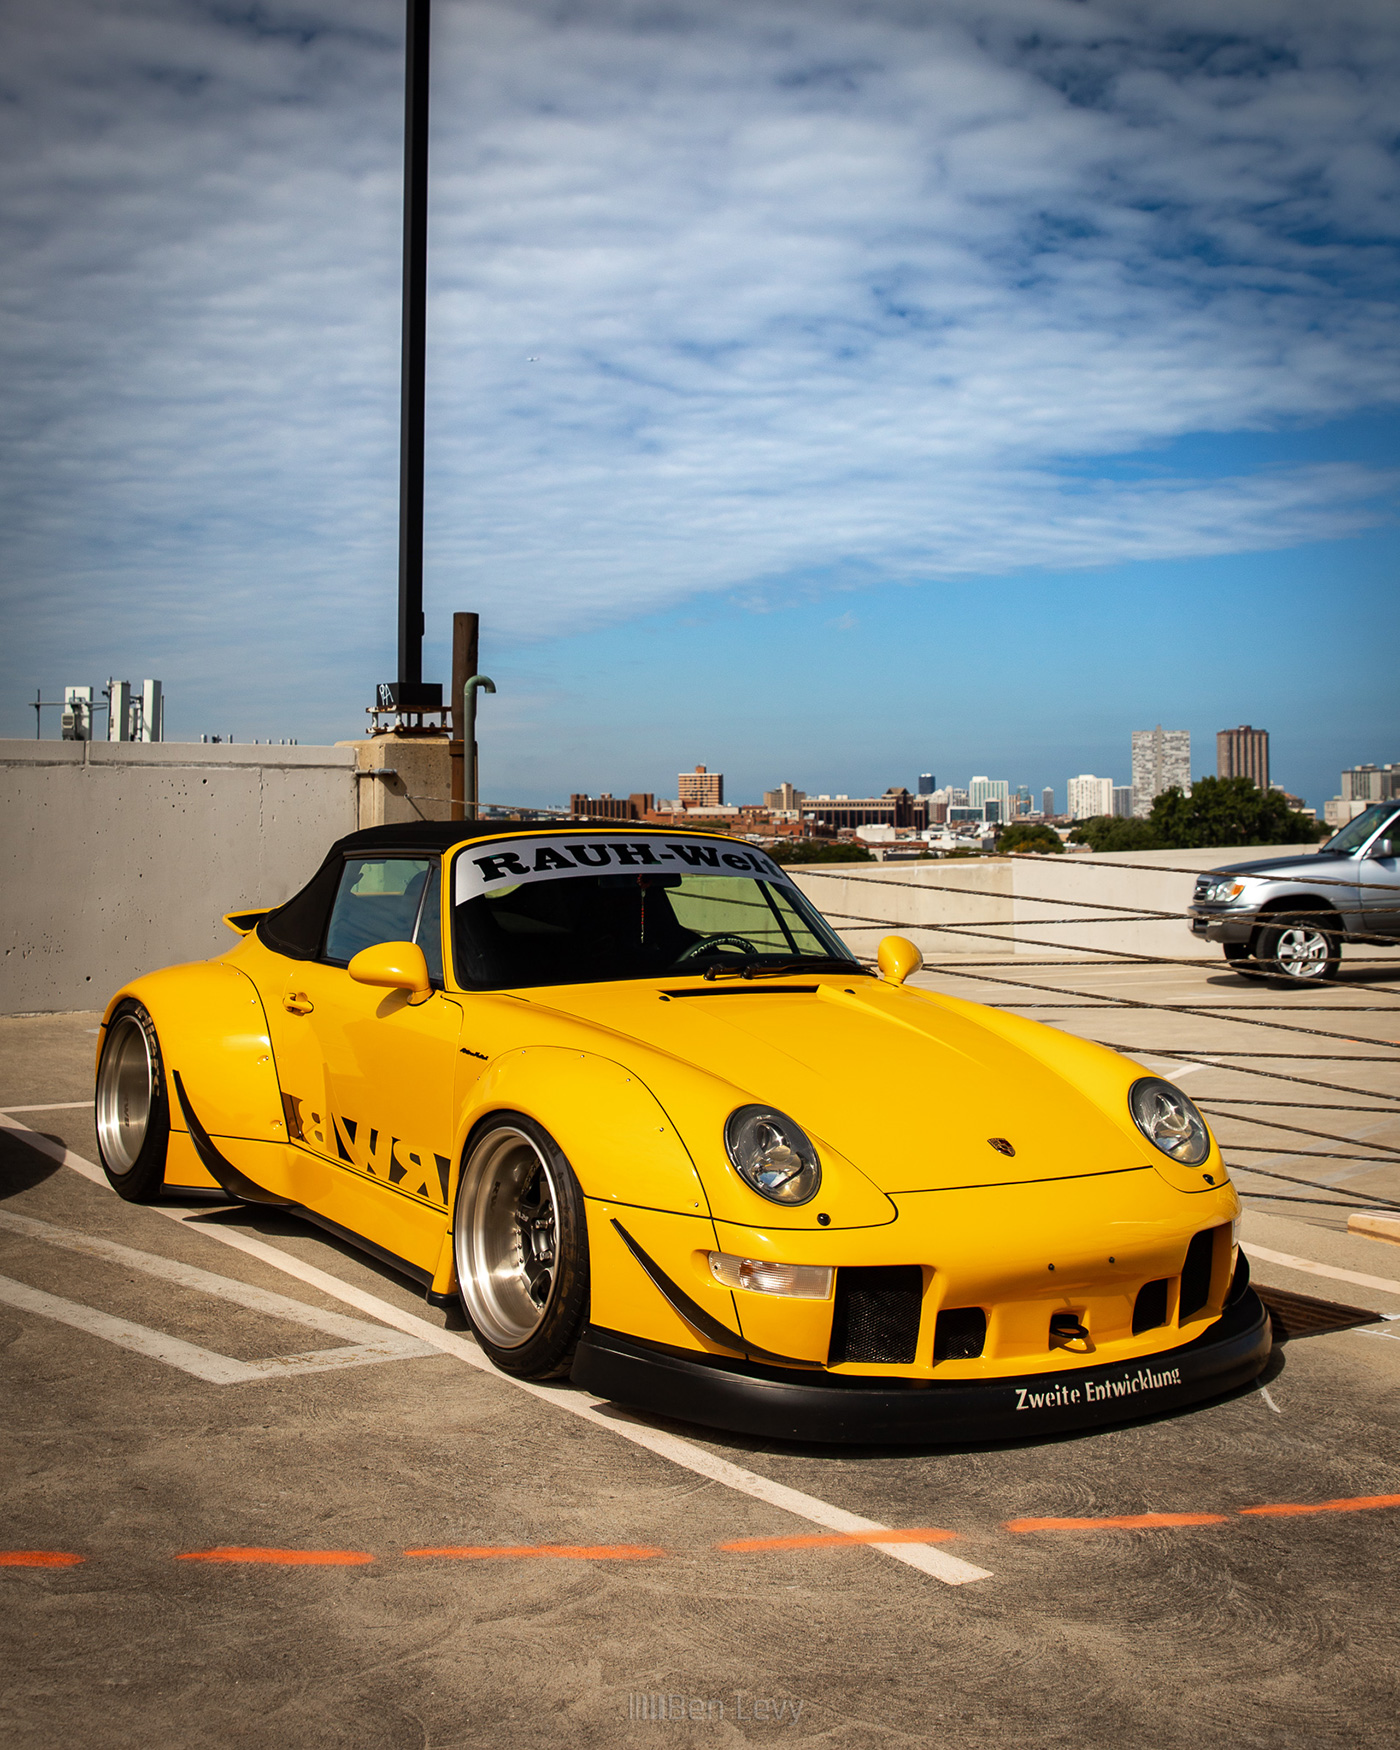 Widebody Porsche 911 in a Chicago Parking Lot